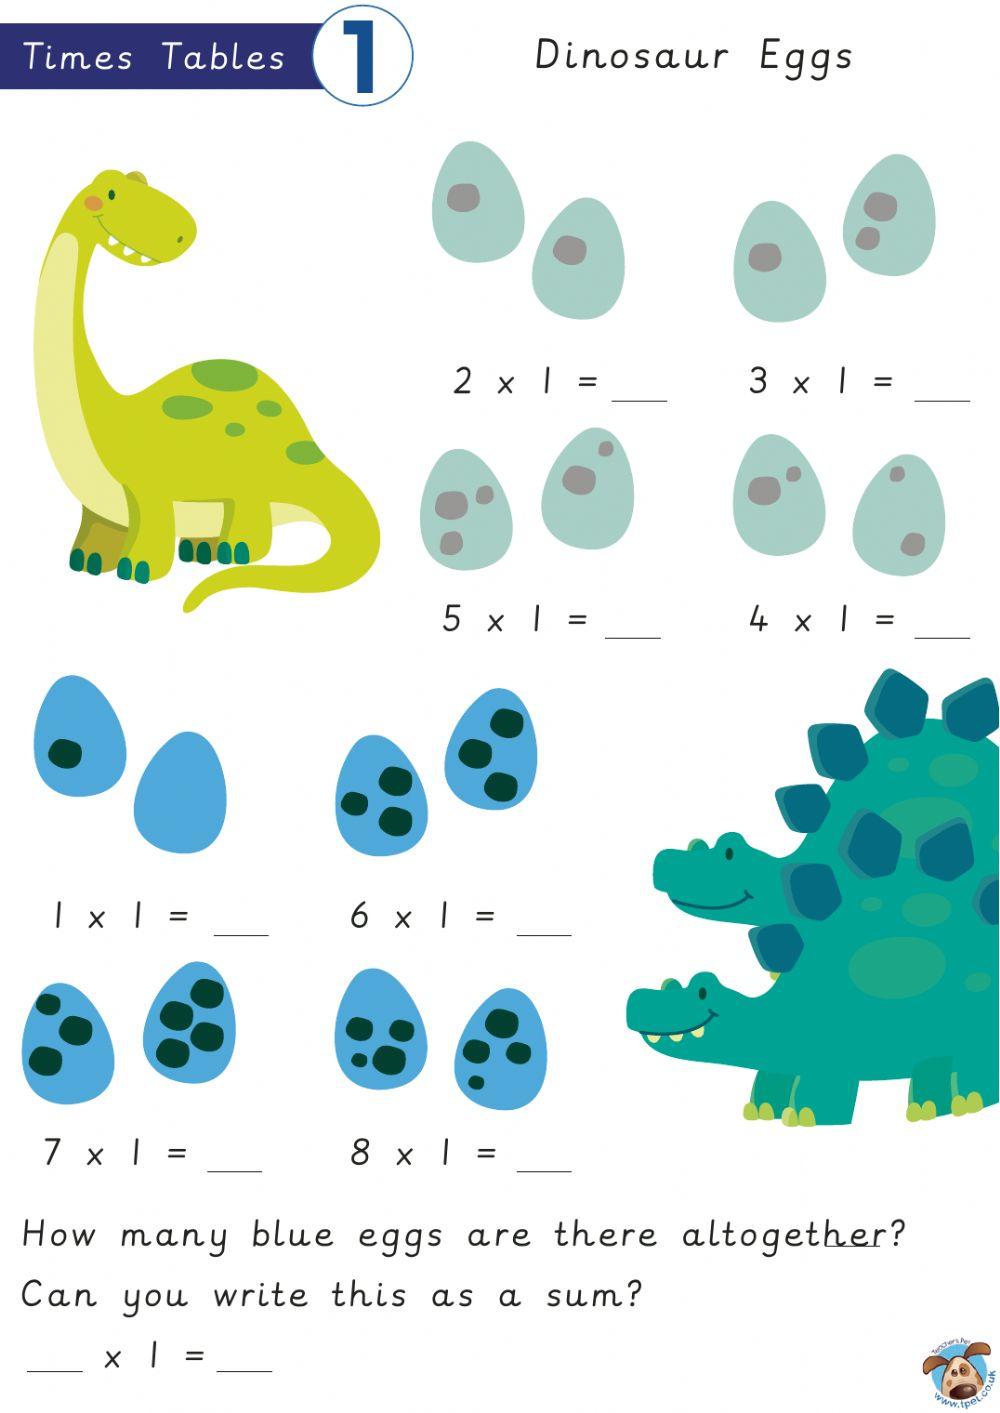 Dinosaur Eggs x1 tables